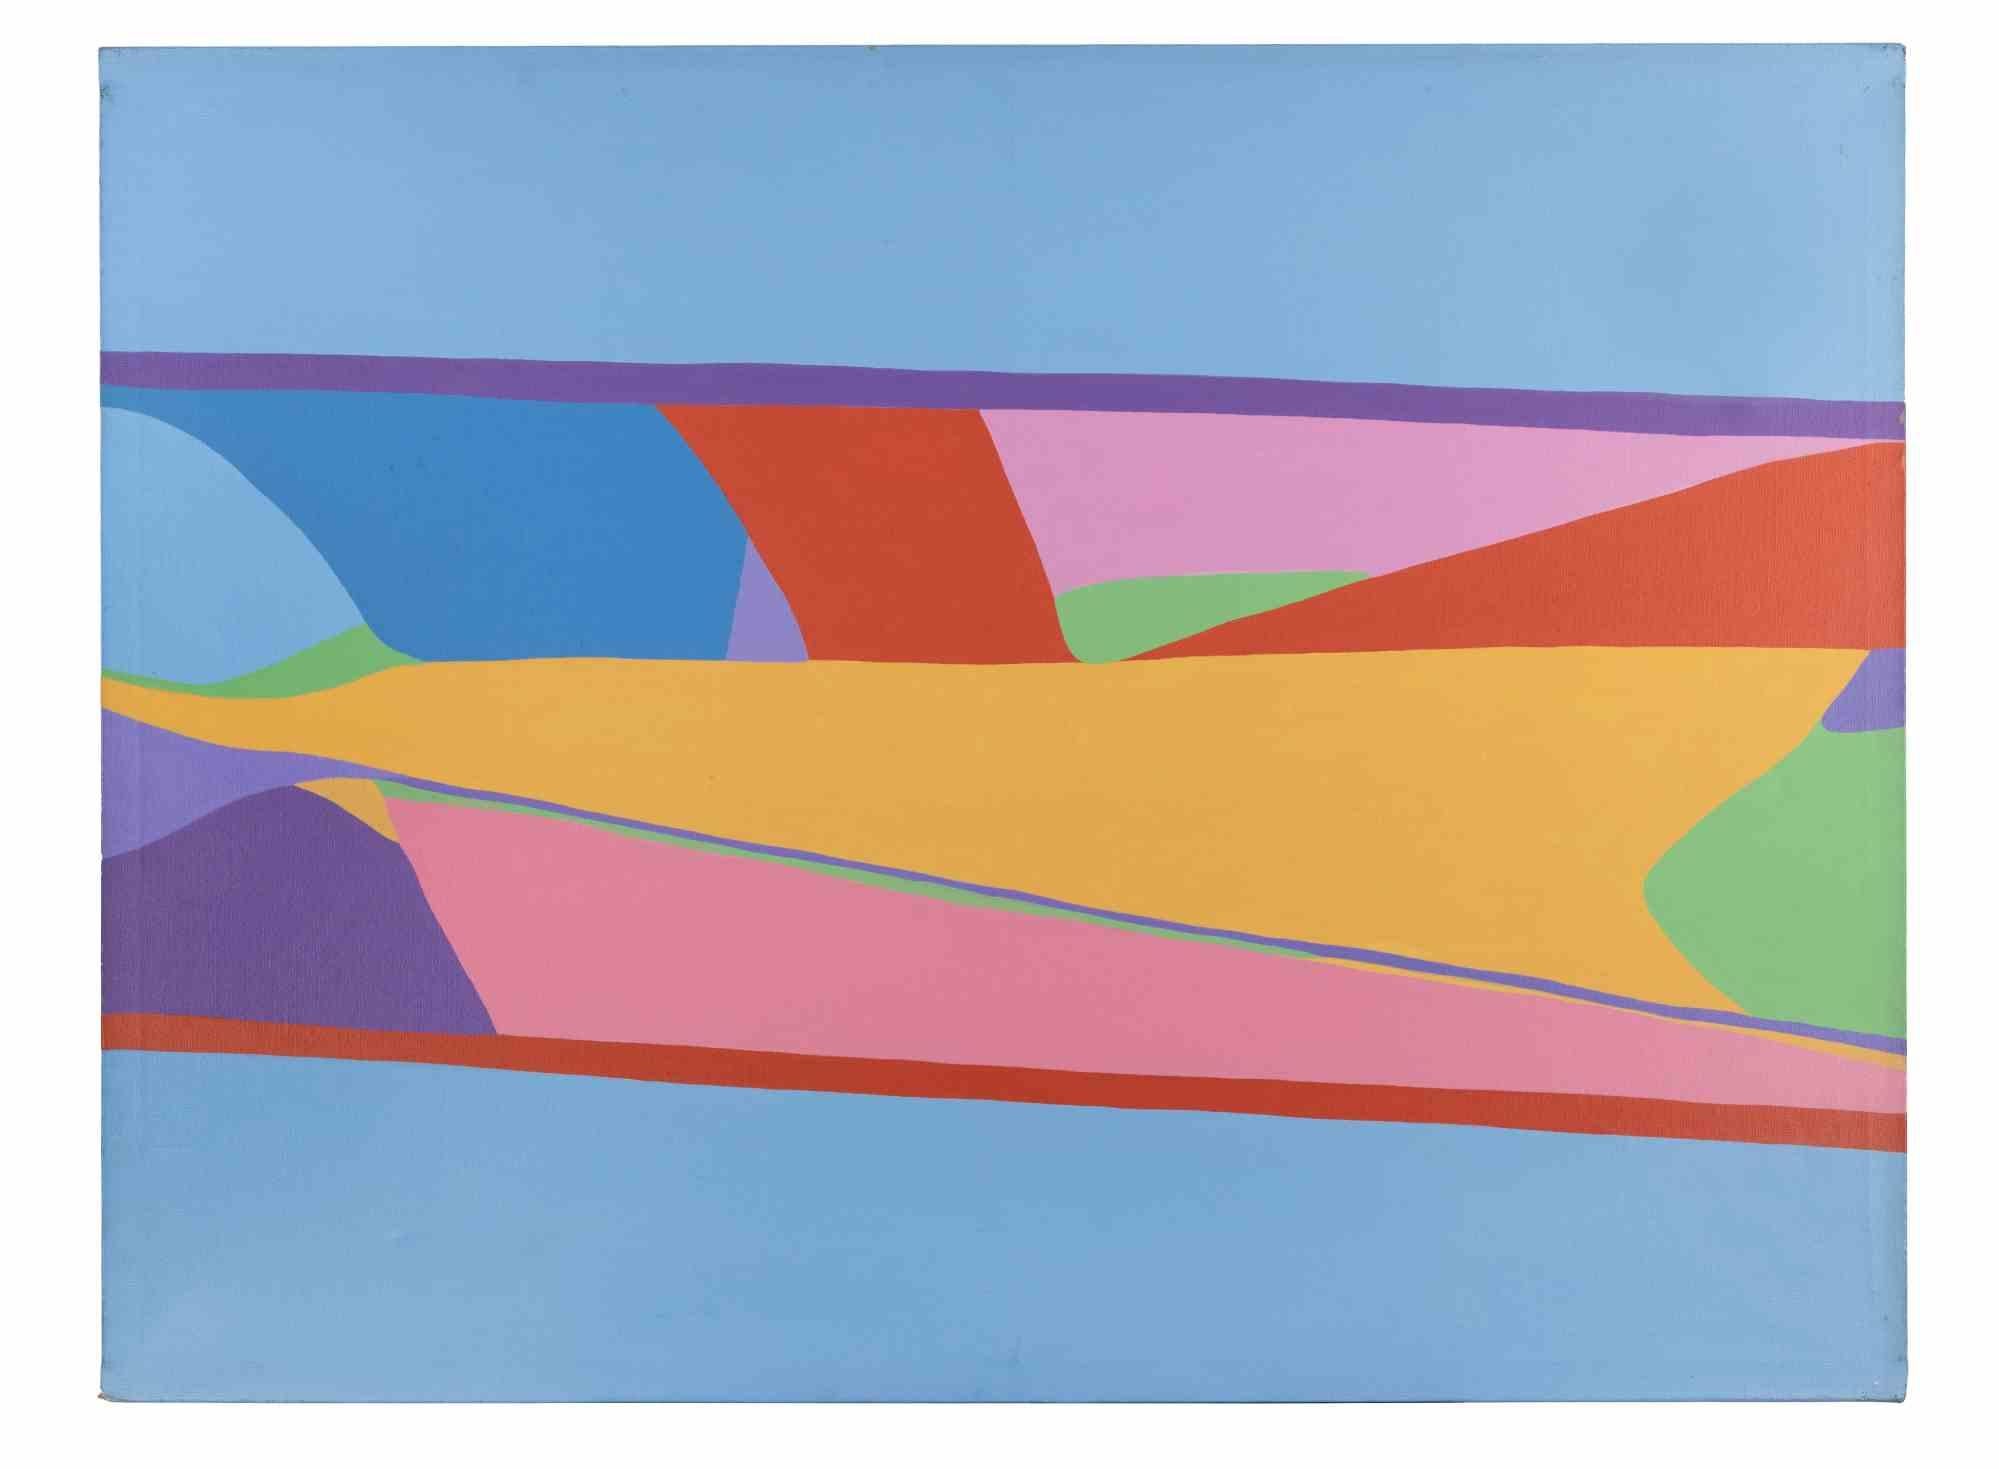 Polychrome Oberfläche 766 ist ein zeitgenössisches Kunstwerk von Genny Puccini aus dem Jahr 1976.

Gemischte farbige Acrylmalerei auf Leinwand.

Handsigniert und datiert auf der Rückseite.